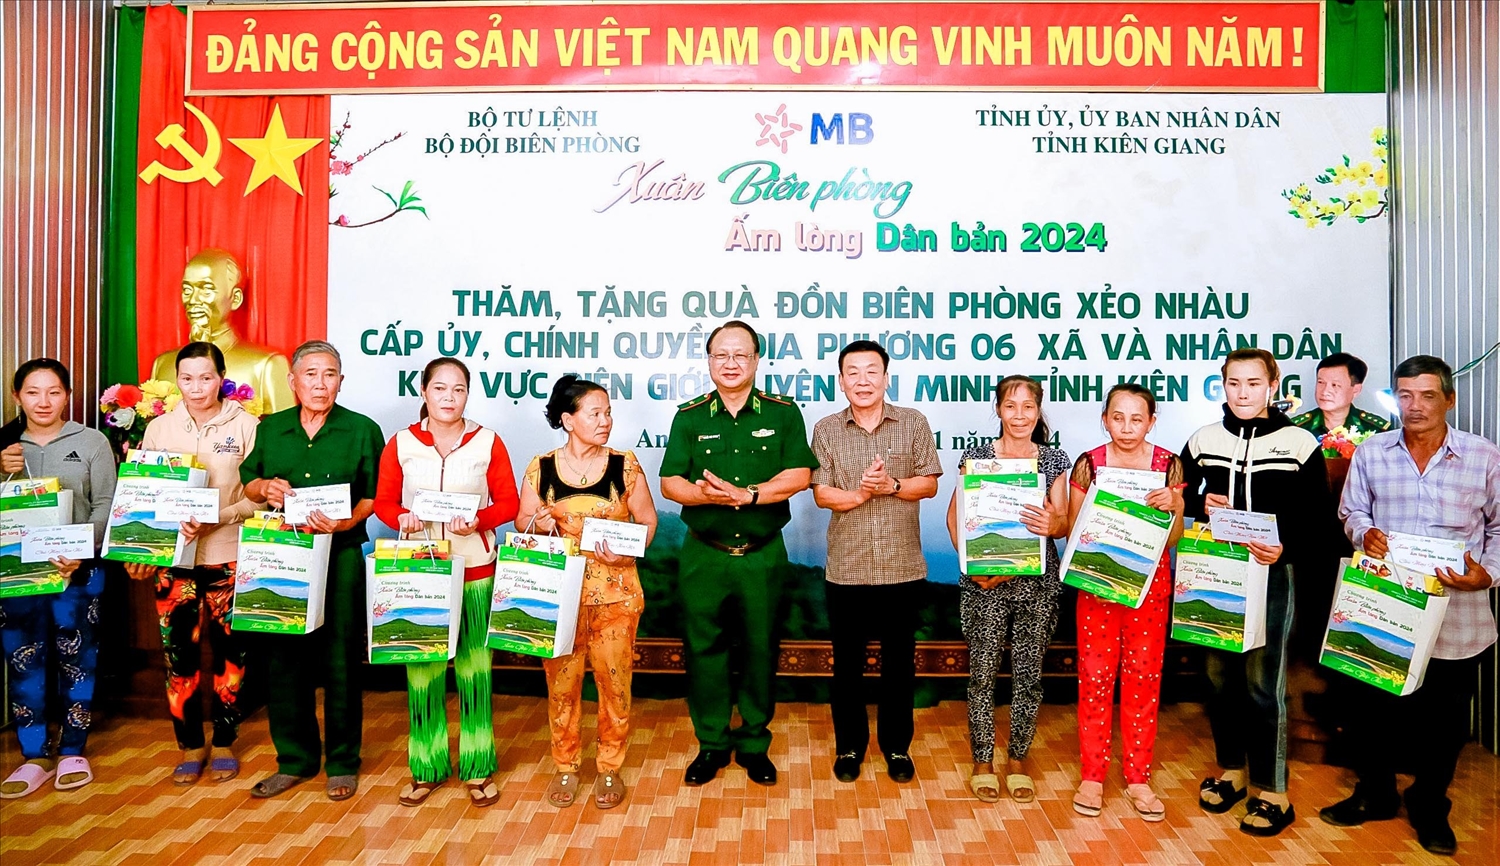 Thiếu tướng Nguyễn Hoài Phương và lãnh đạo UBND huyện An Minh trao quà cho các hộ dân